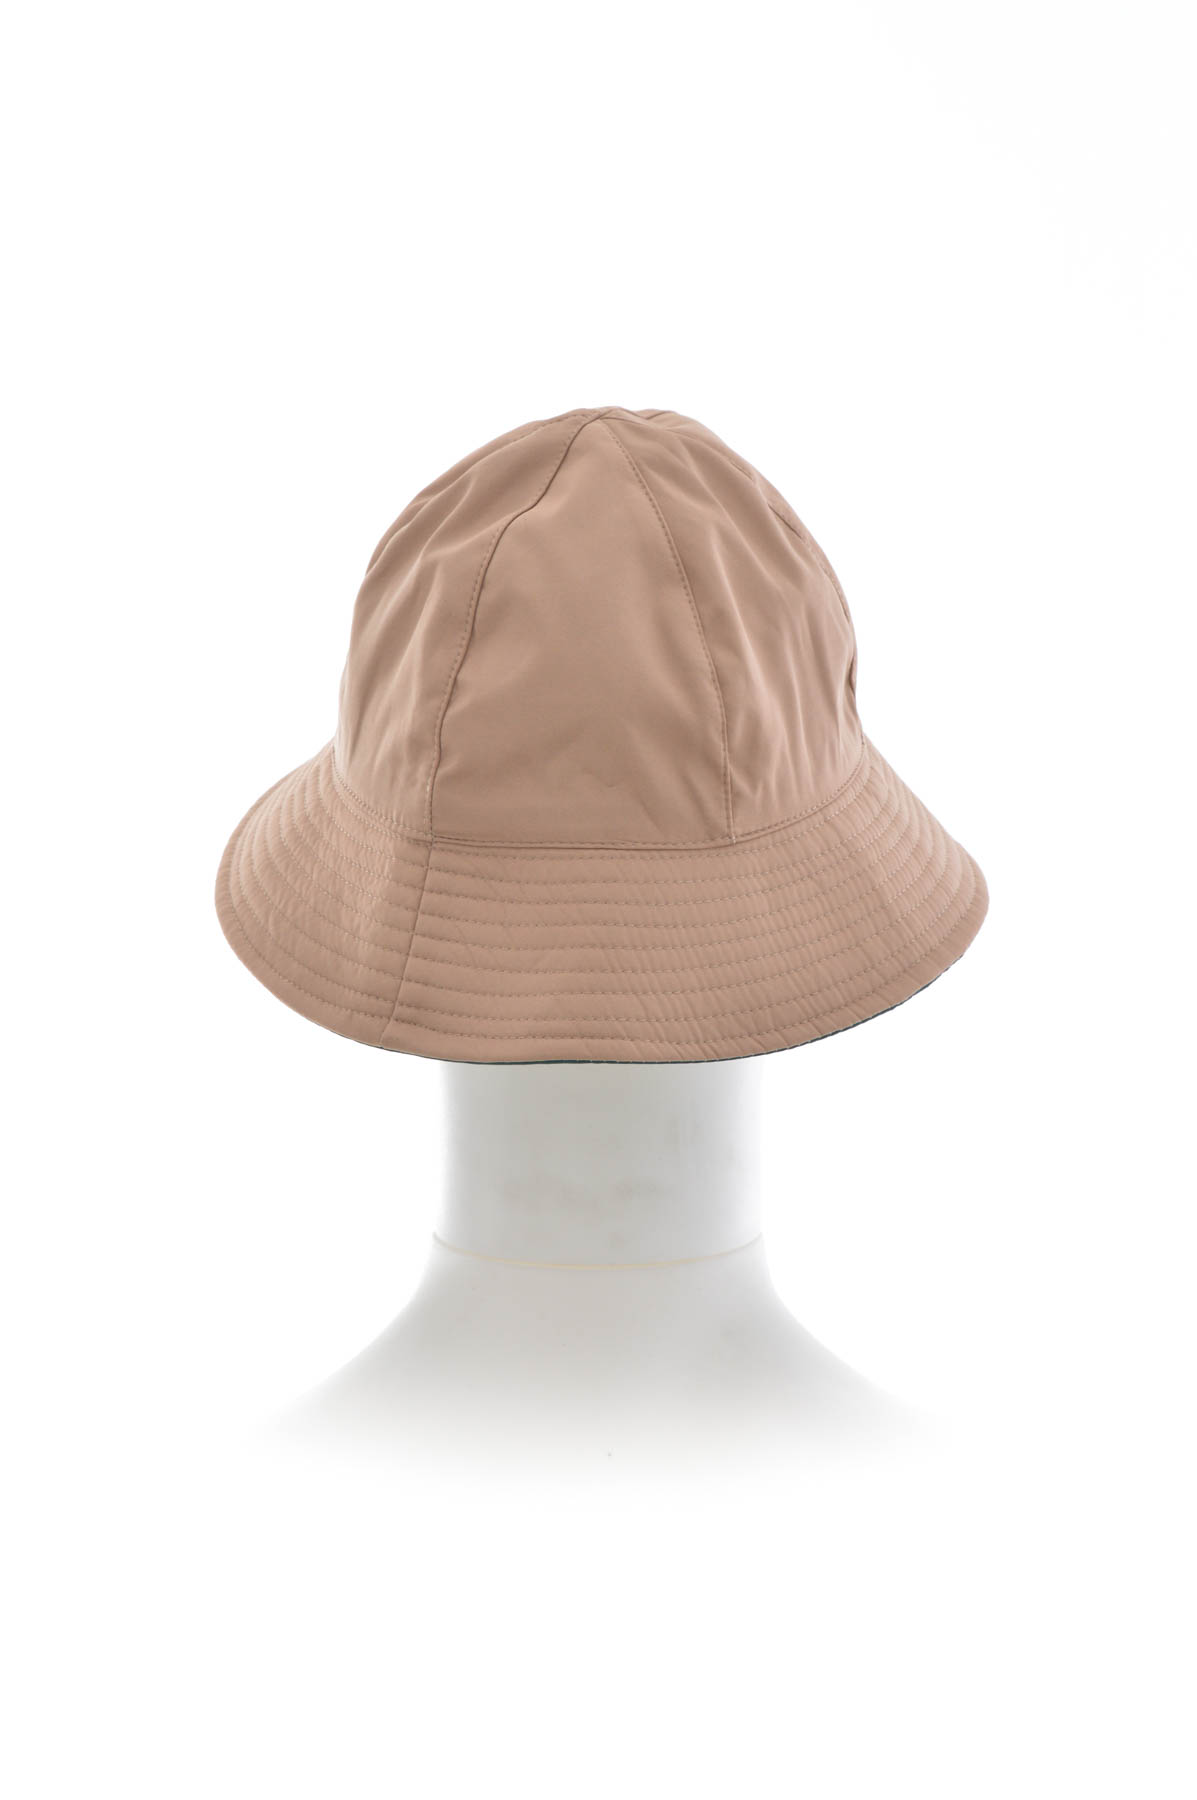 Γυναικείο καπέλο διπλής όψης - PARFOIS - 1